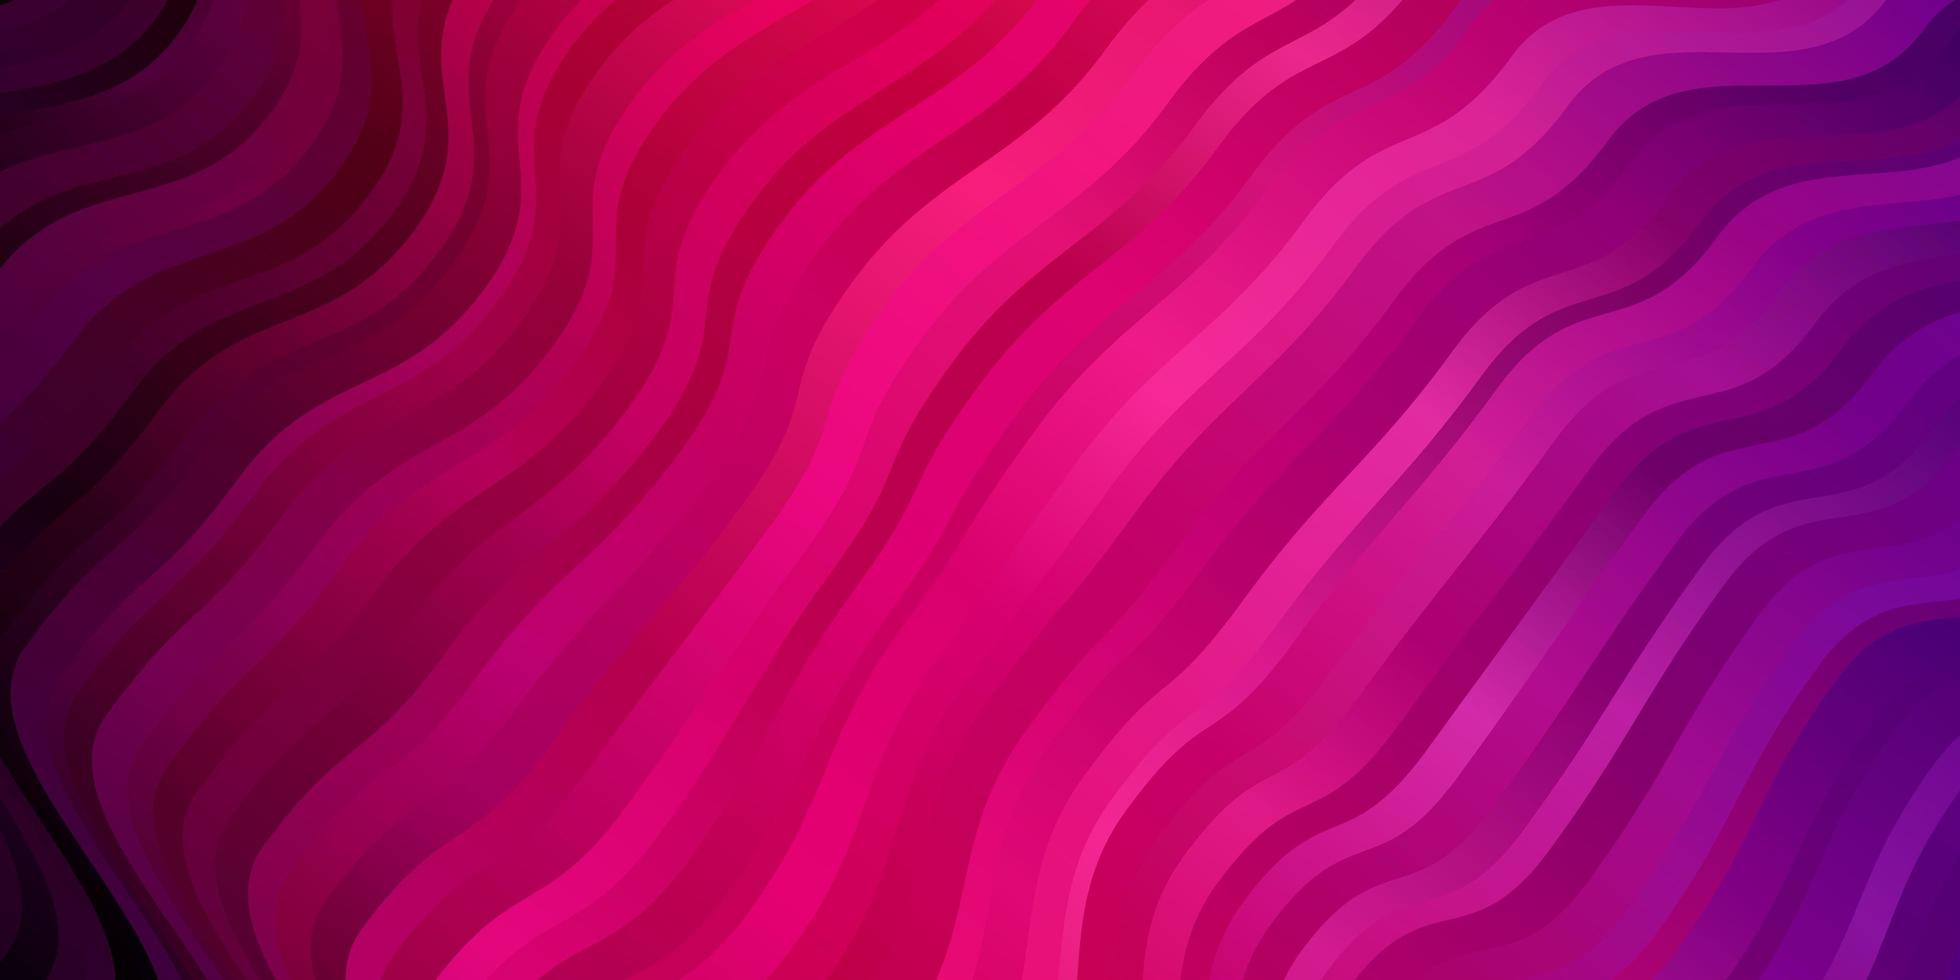 diseño vectorial de color rosa, violeta claro con arco circular. vector